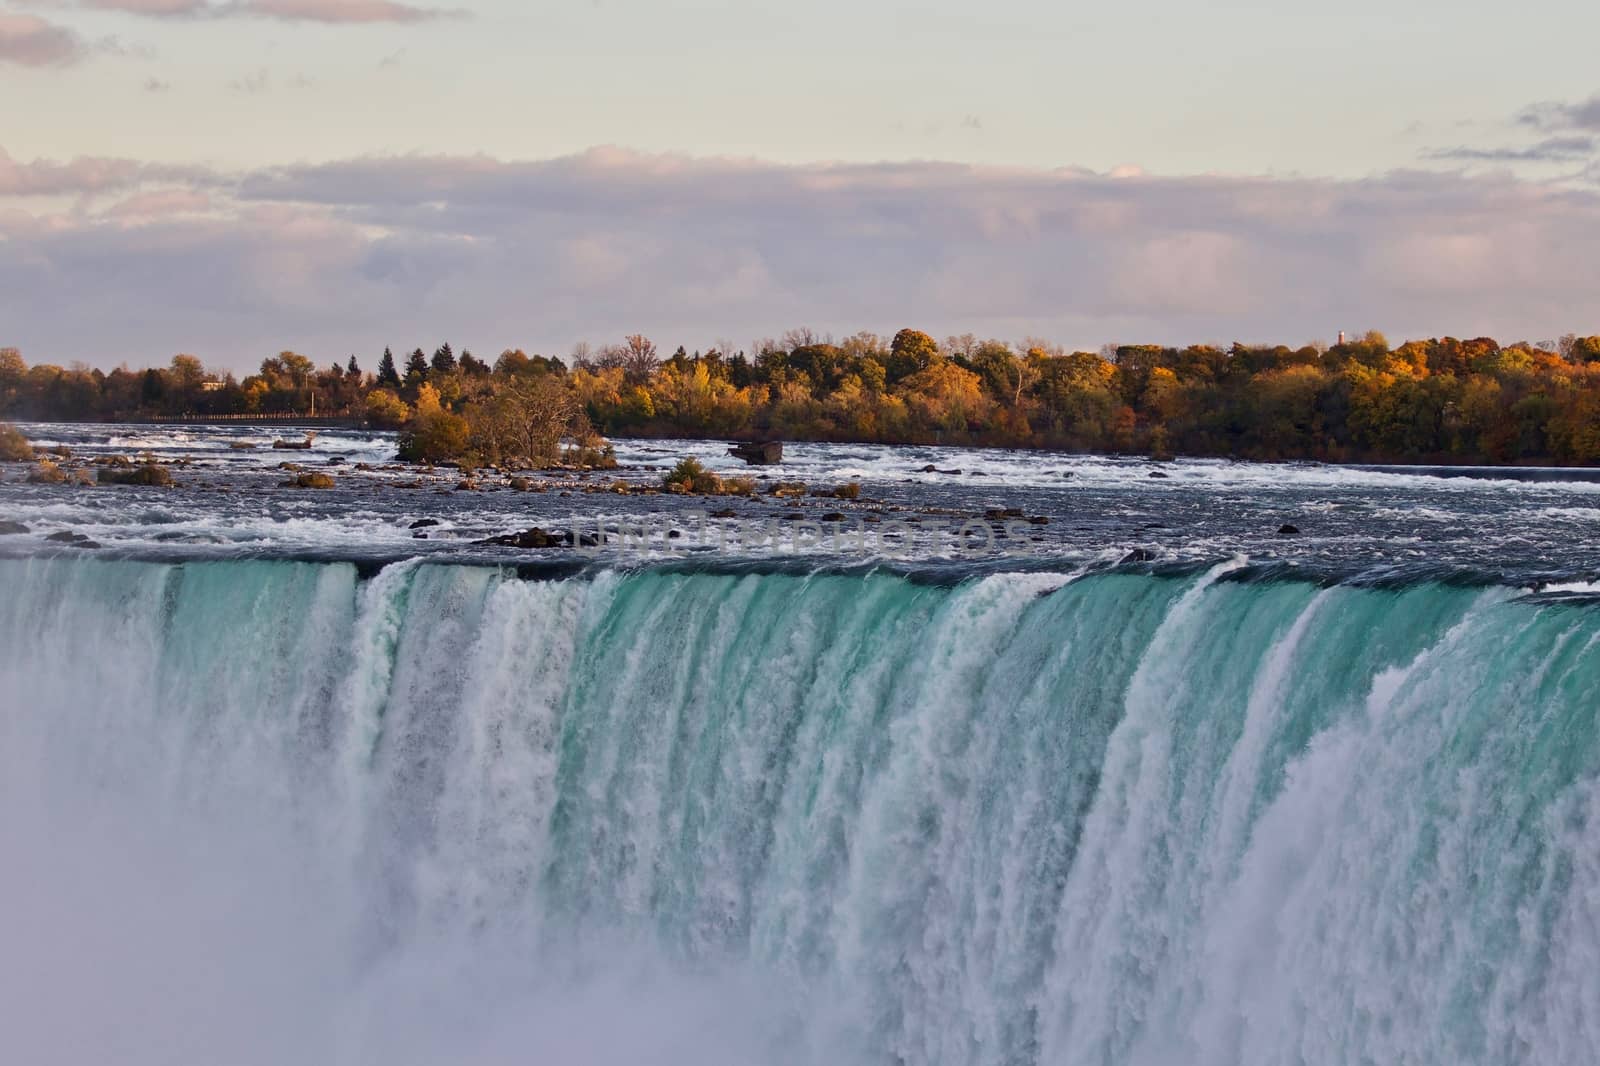 Beautiful background with amazing Niagara waterfall